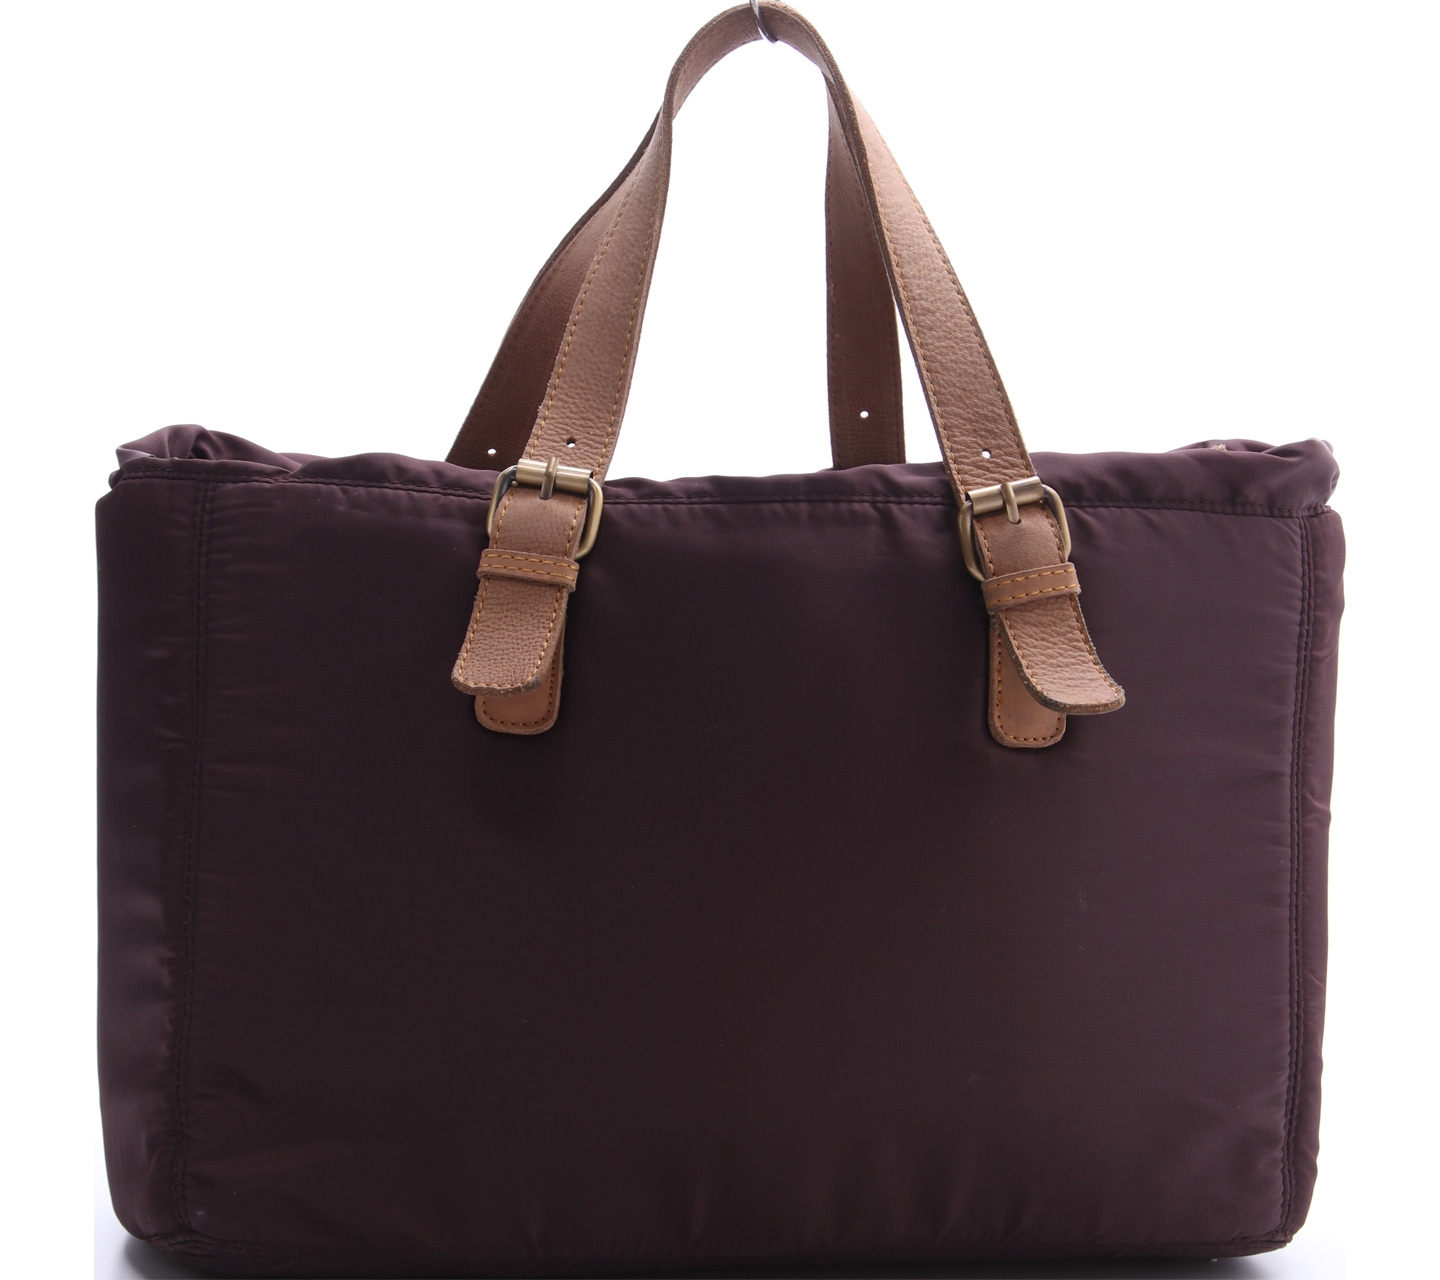 Moozee Brown Handbag